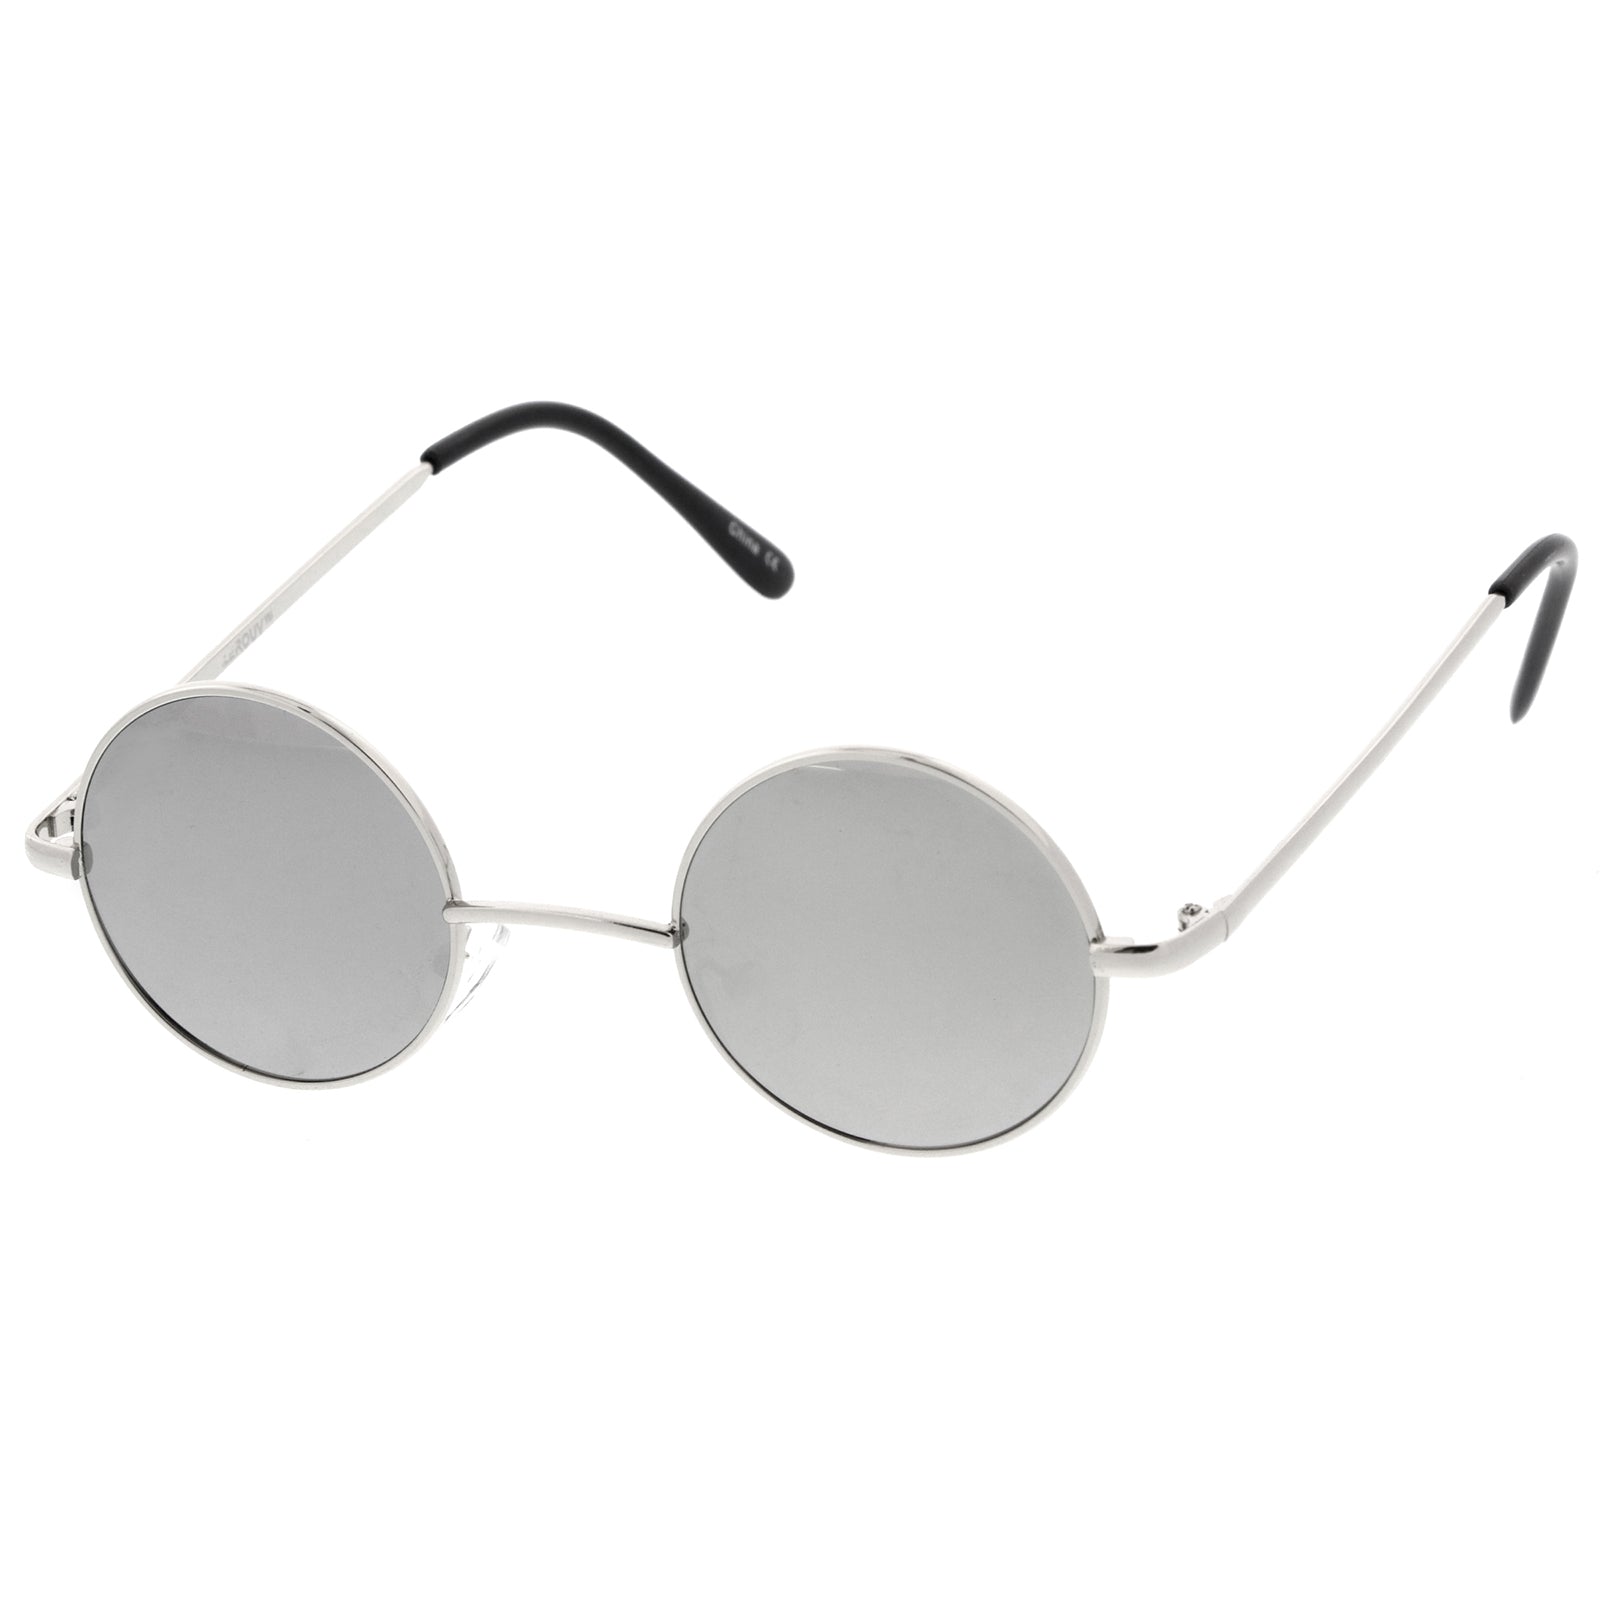 Colored Metal Style Small Mirror Retro Round Lennon Sunglasses 41 Lens